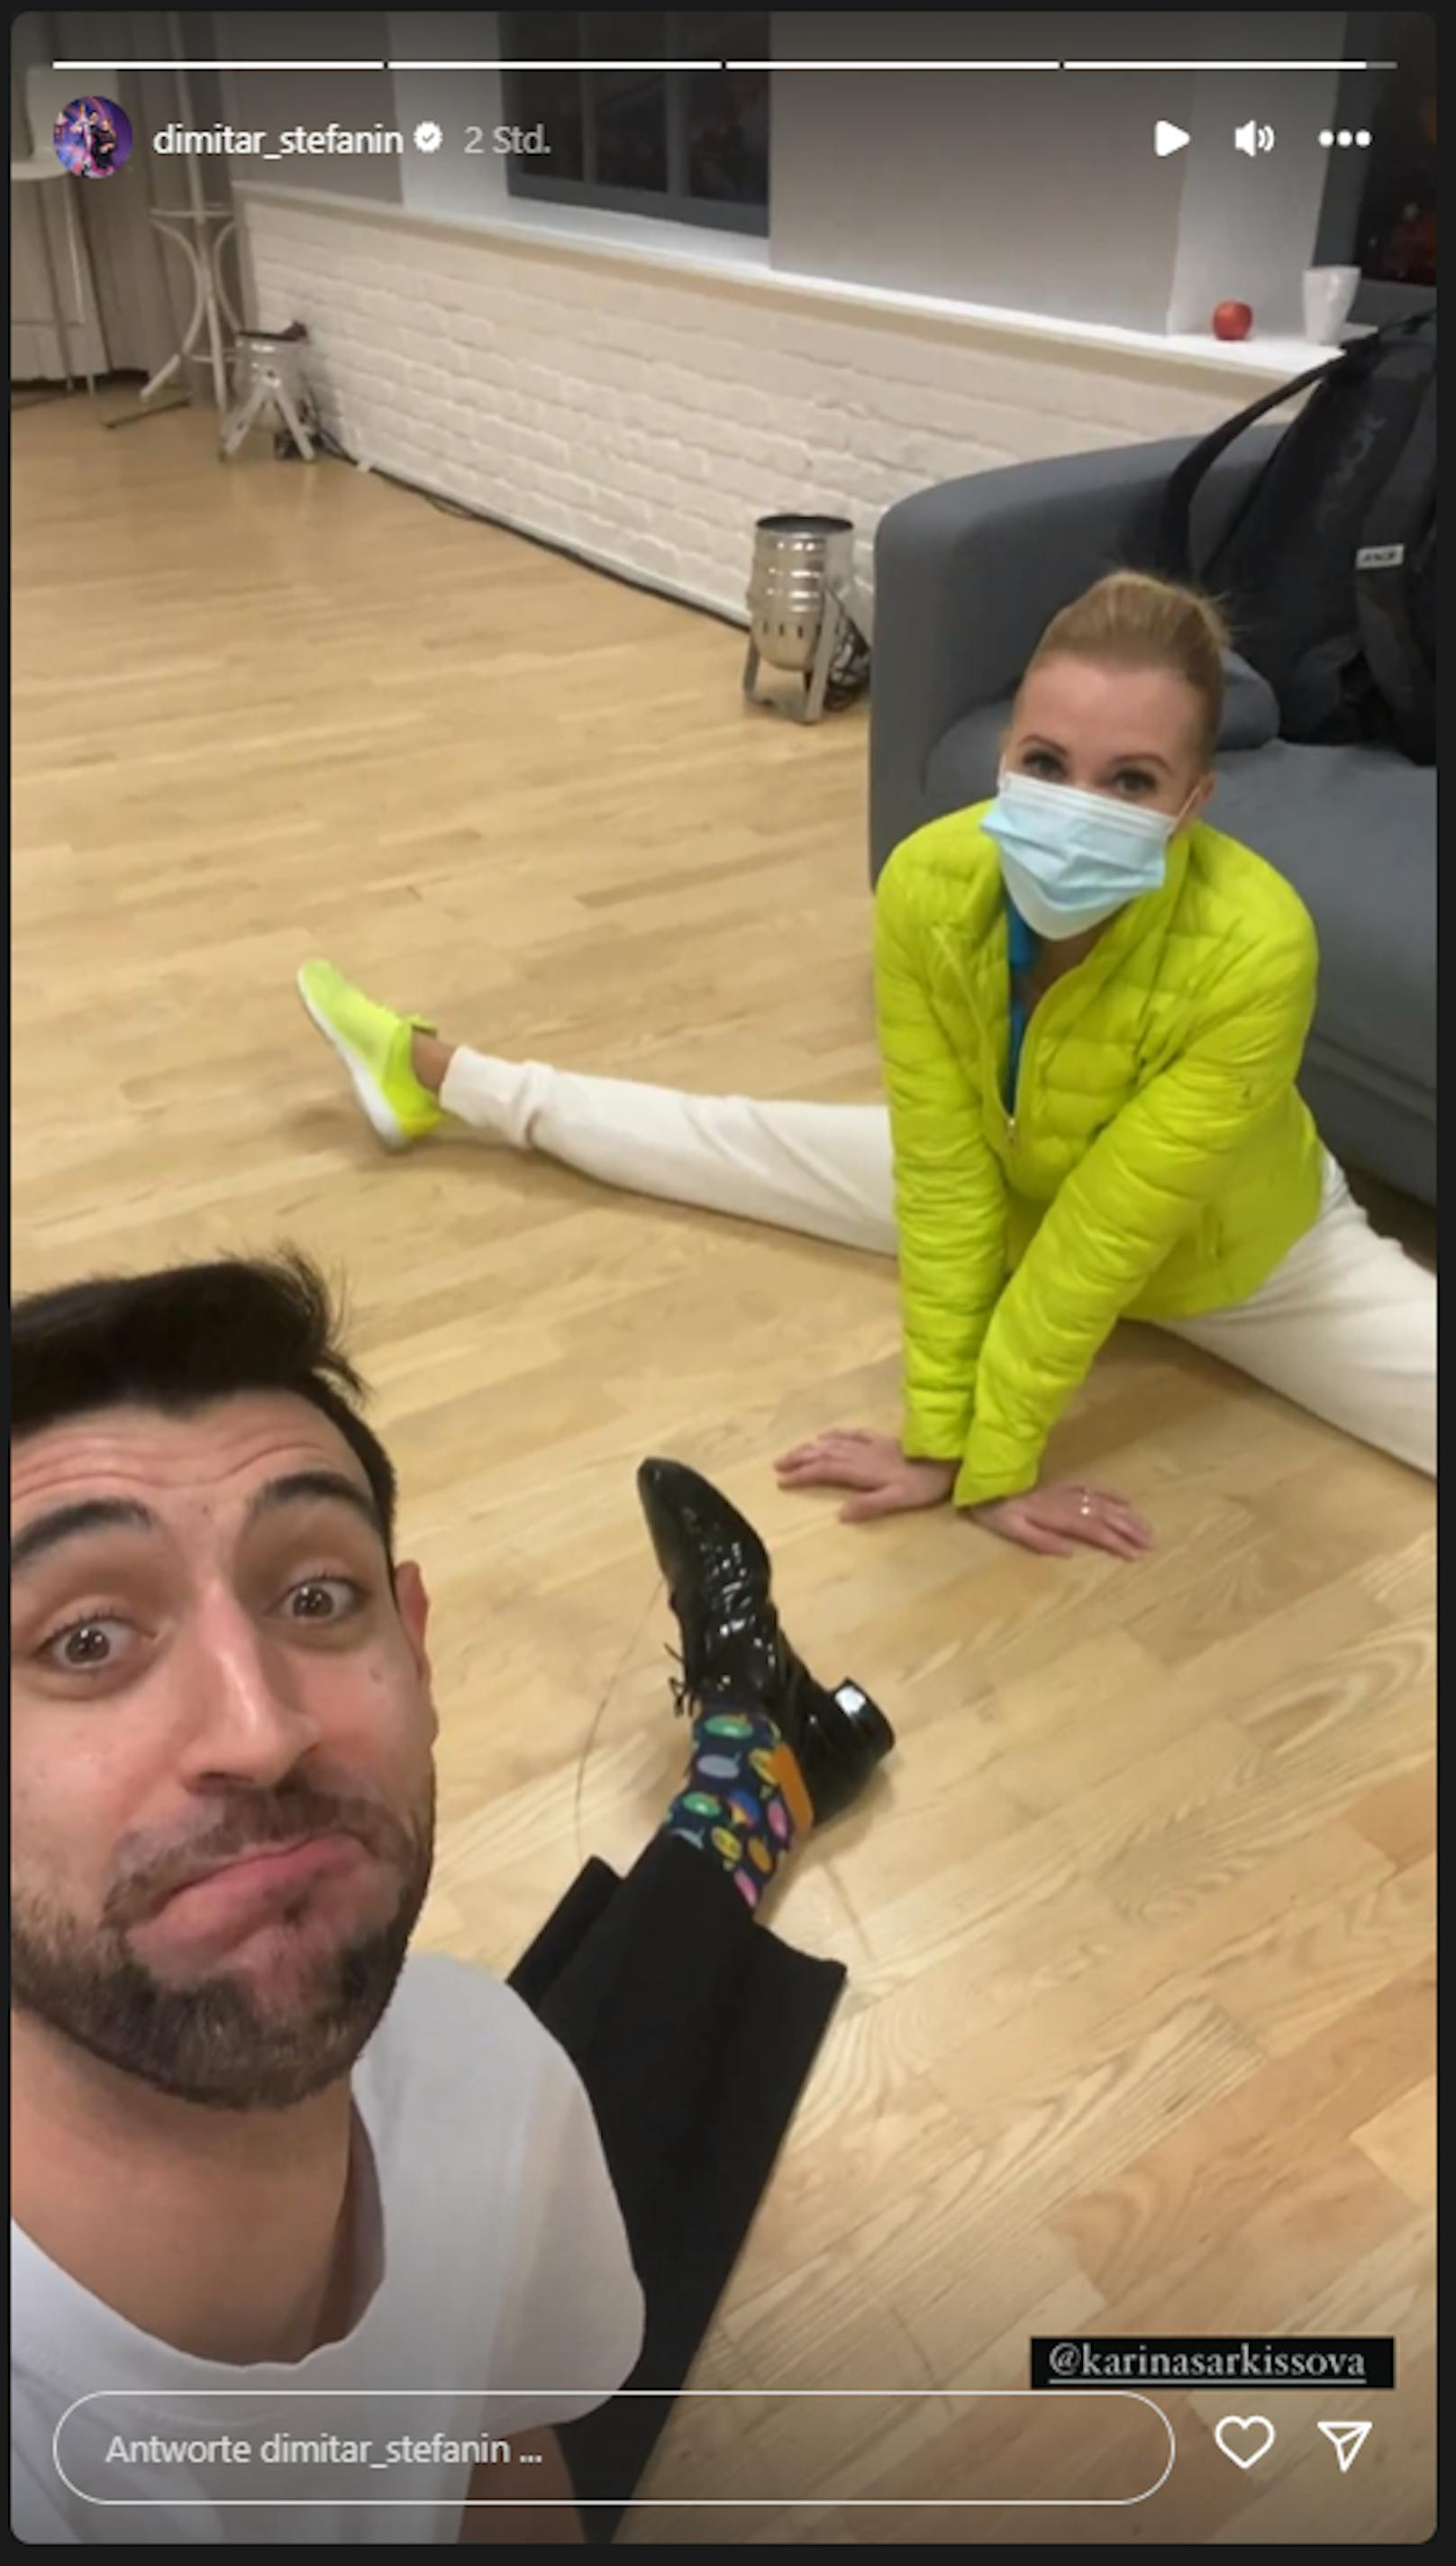 Dimitar Stefanin ist erleichtert: Seine Promi-Tänzerin Karina Sarkissova kann weitertanzen, ihre Nase ist "beleidigt", aber nicht gebrochen. 